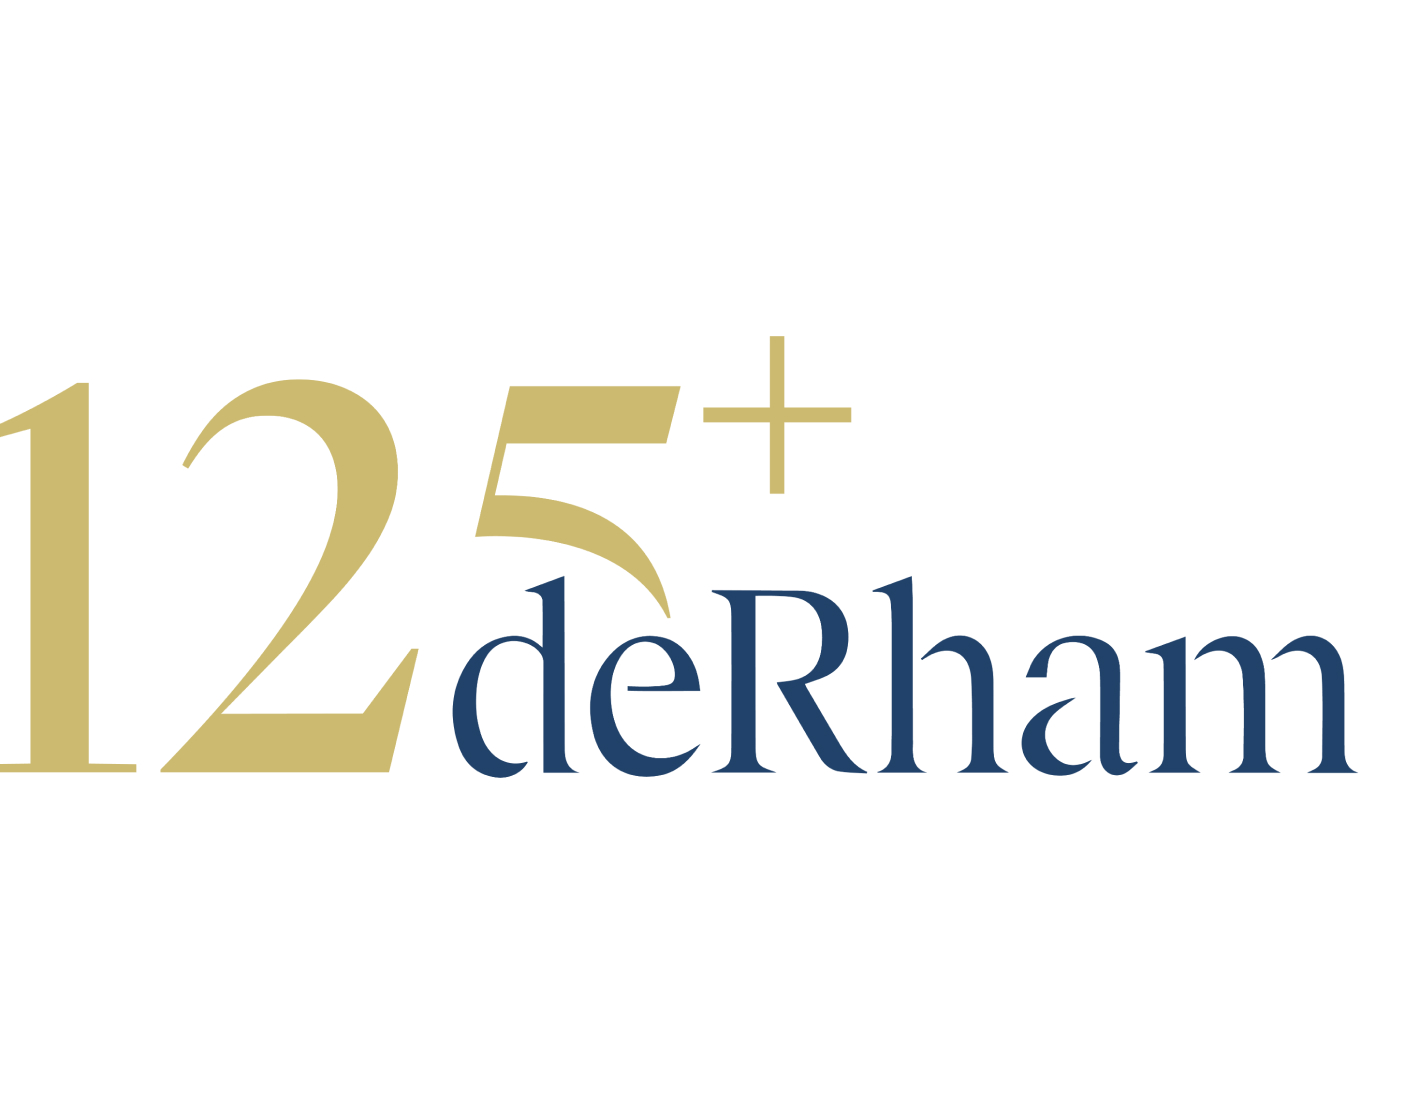 deRham, l'agence immobilière suisse avec plus de 125 ans d'expérience